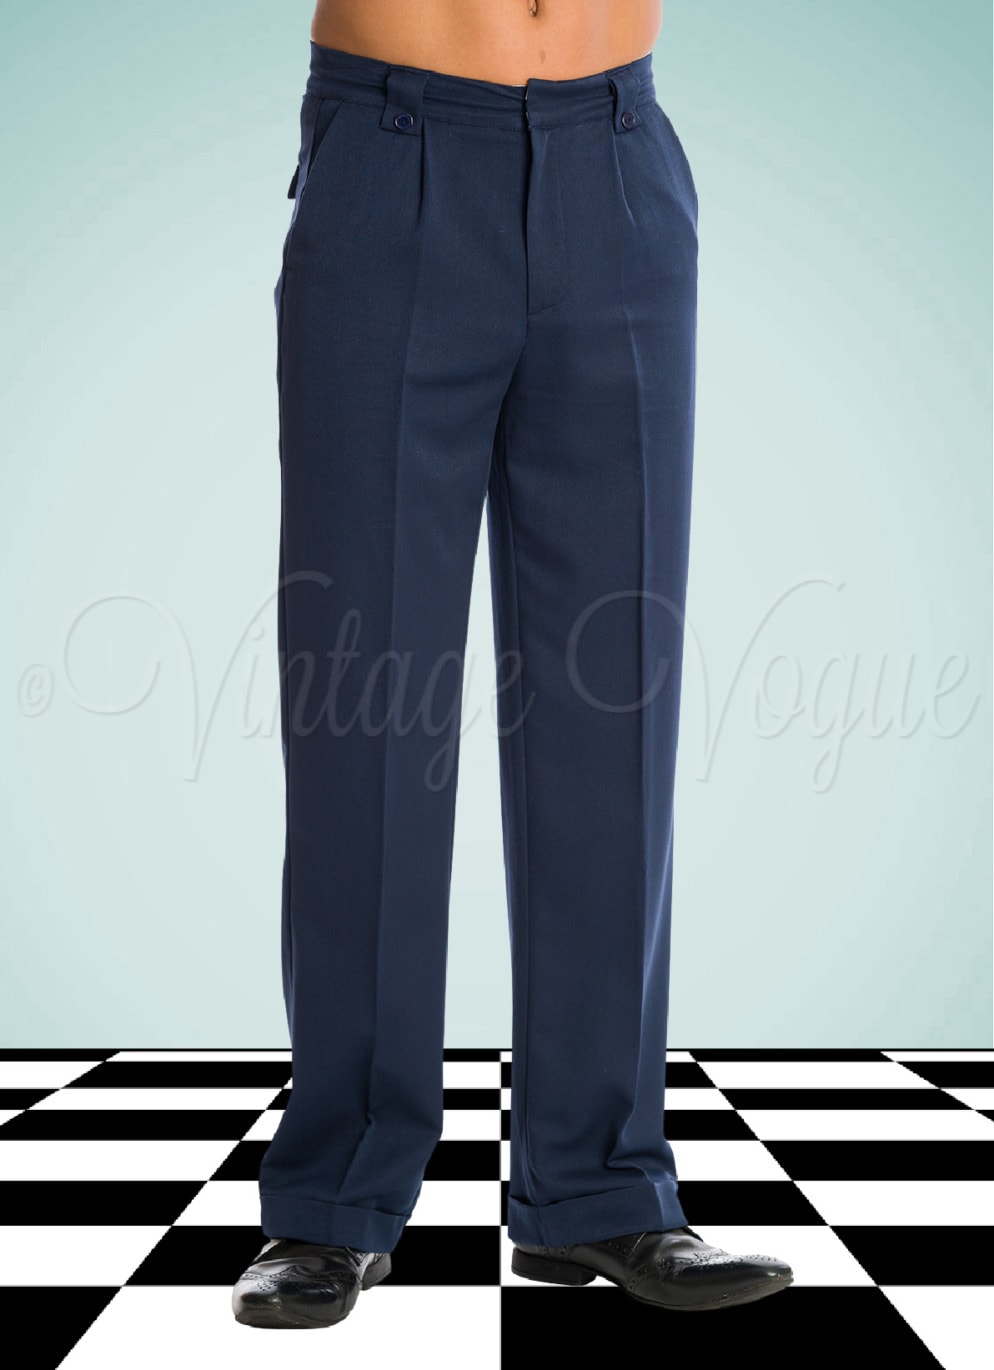 Banned 40er Jahre Vintage Herren Bundfalten Hose Get in Line Trousers in Navy Blau